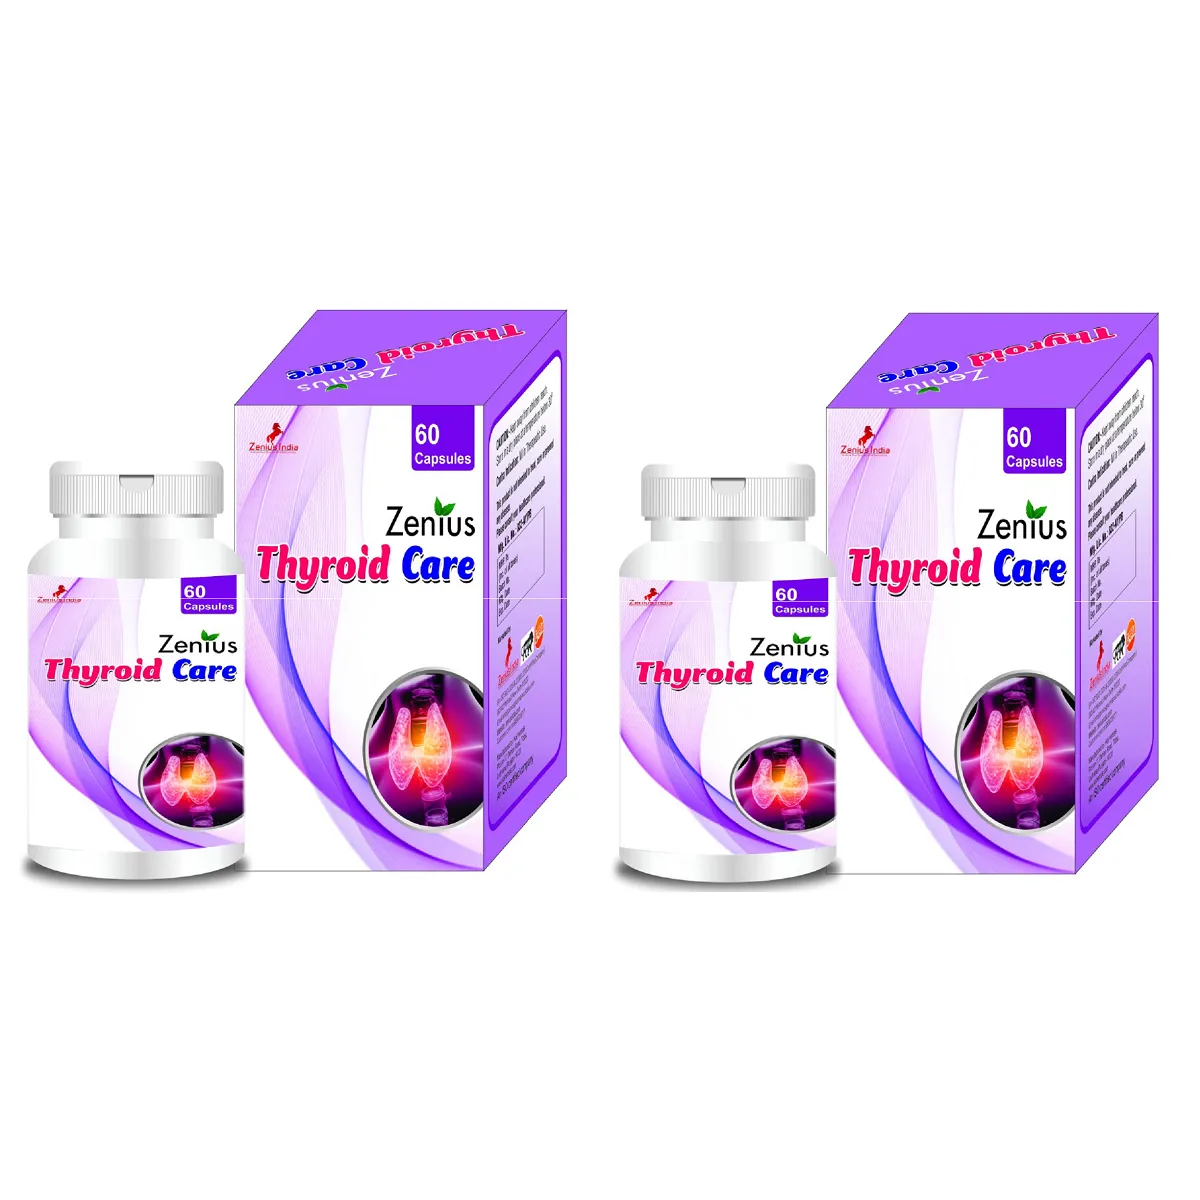 Zenius Thyroid Care Capsules 60caps, Pack of 2